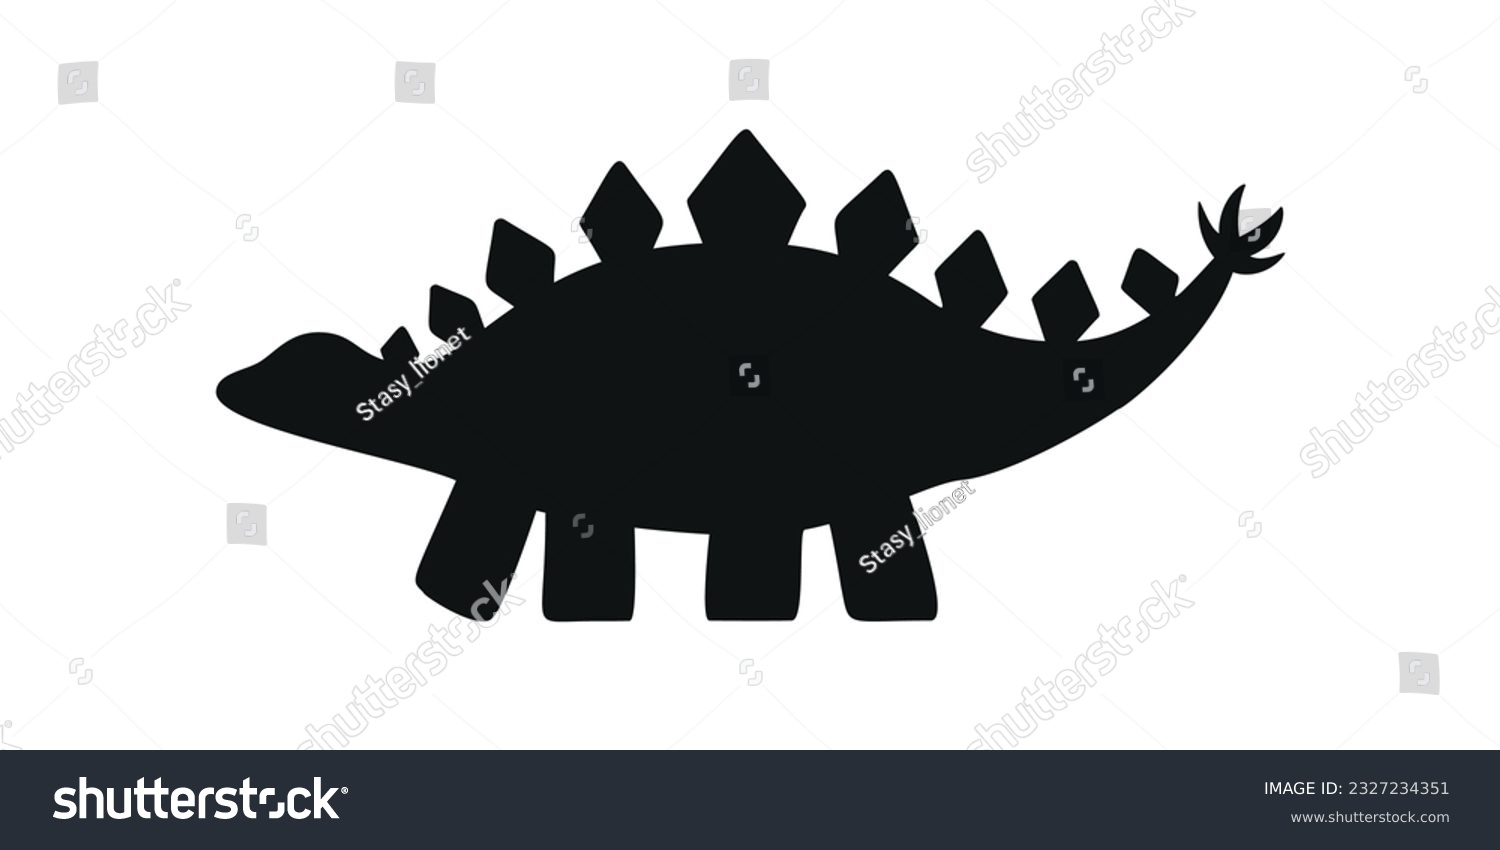 SVG of Flat vector silhouette illustration of stegosaurus dinosaur svg